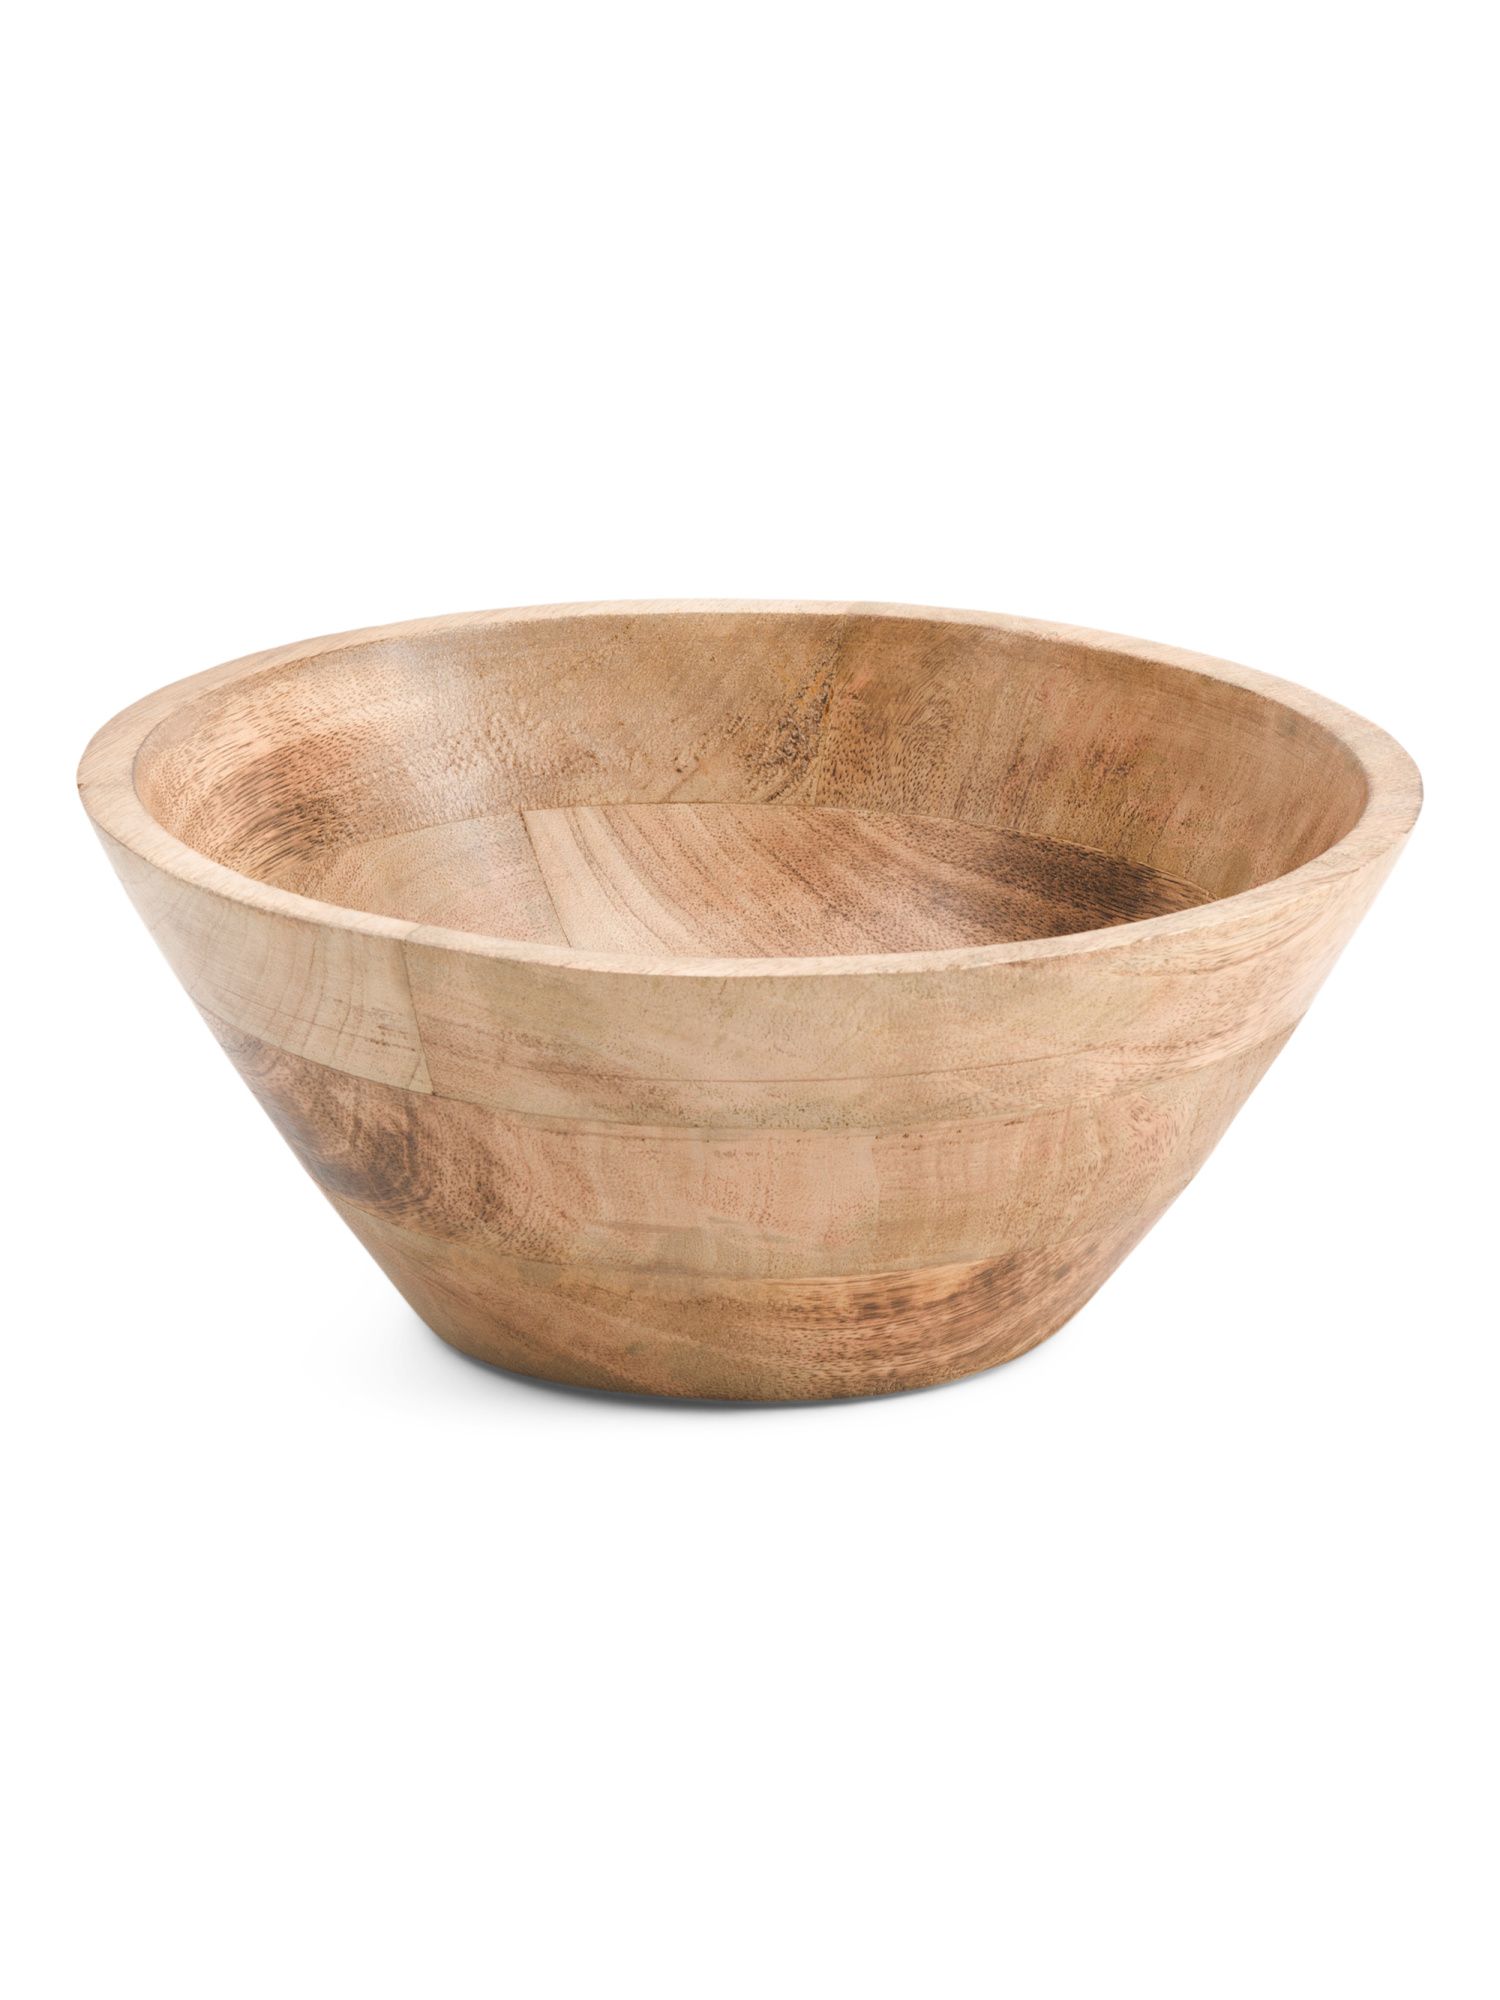 10in Wooden Bowl | TJ Maxx